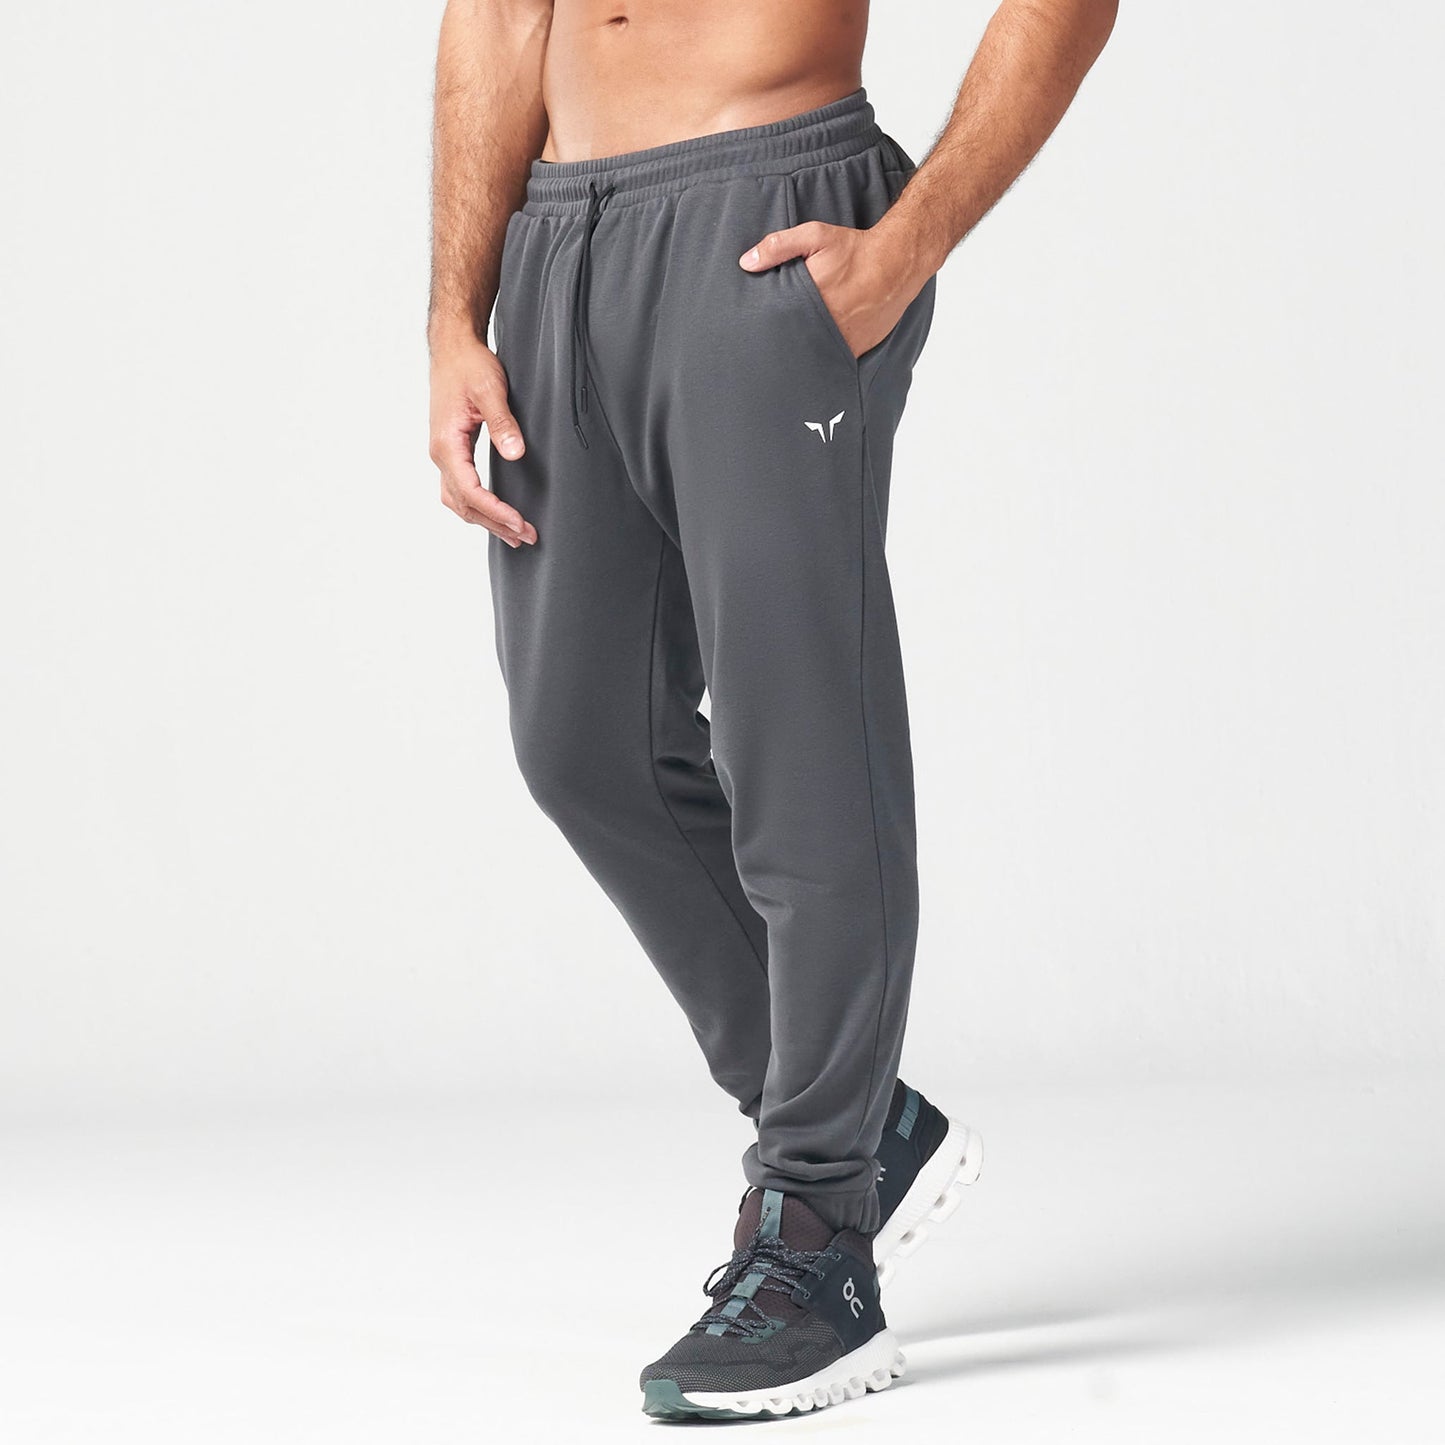 squatwolf-gym-wear-essential-jogger-pants-bundle-2-workout-pants-for-men